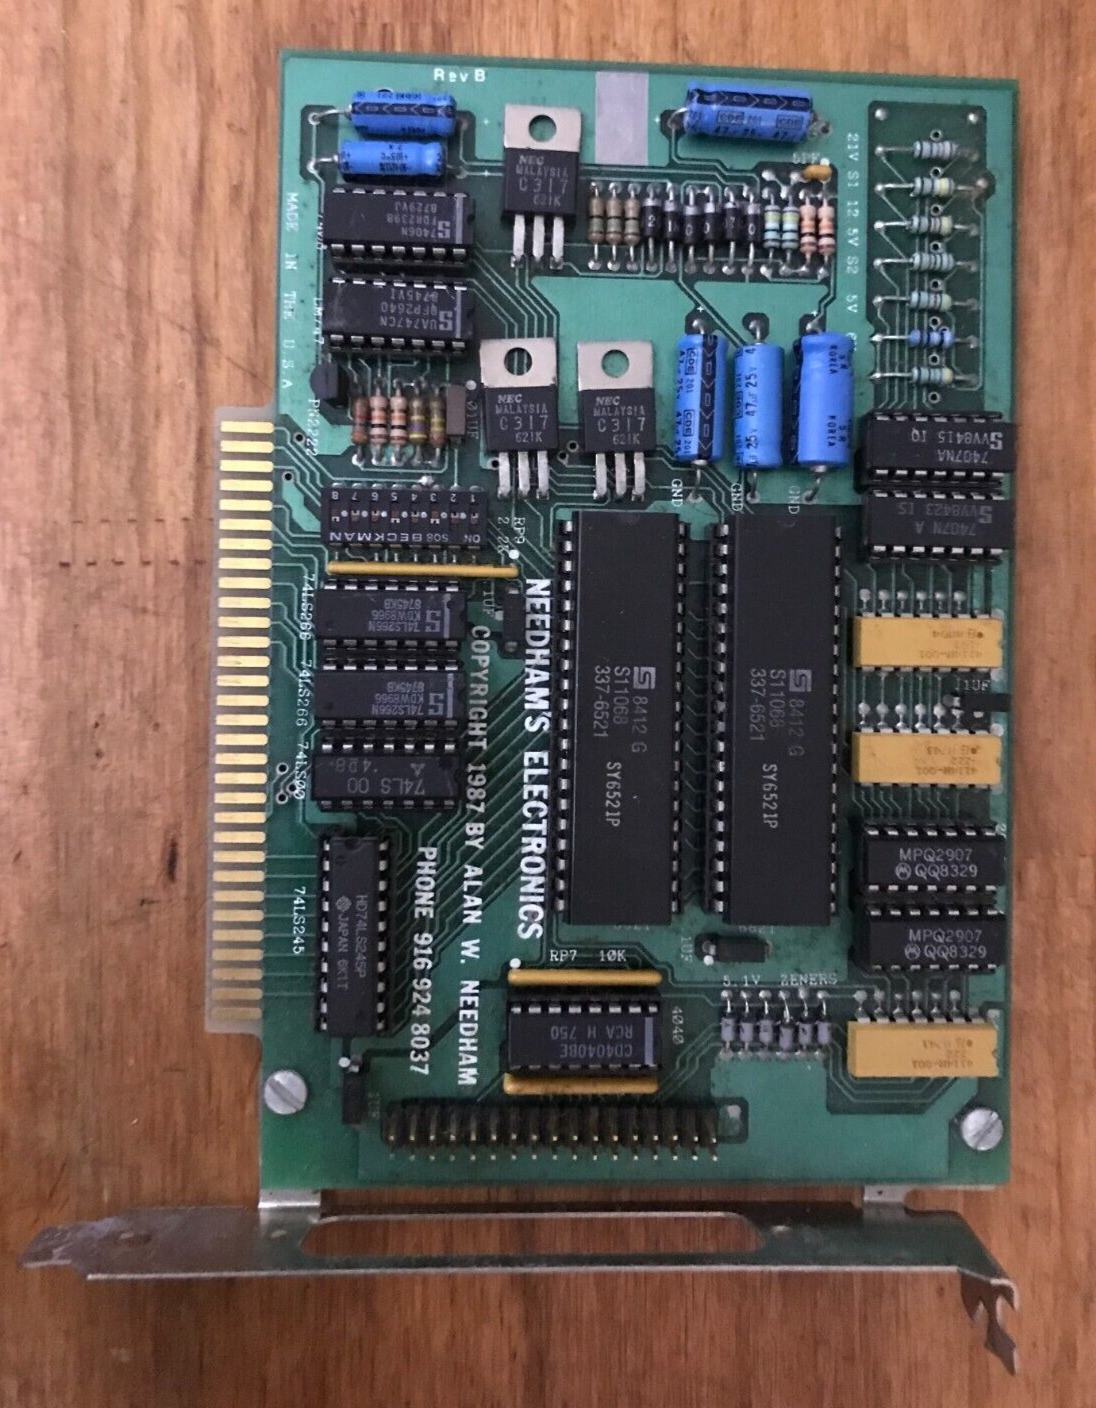 Vintage Needham's Electronics Programmer Board LM/47 PN2222 RevB Copyright 1987